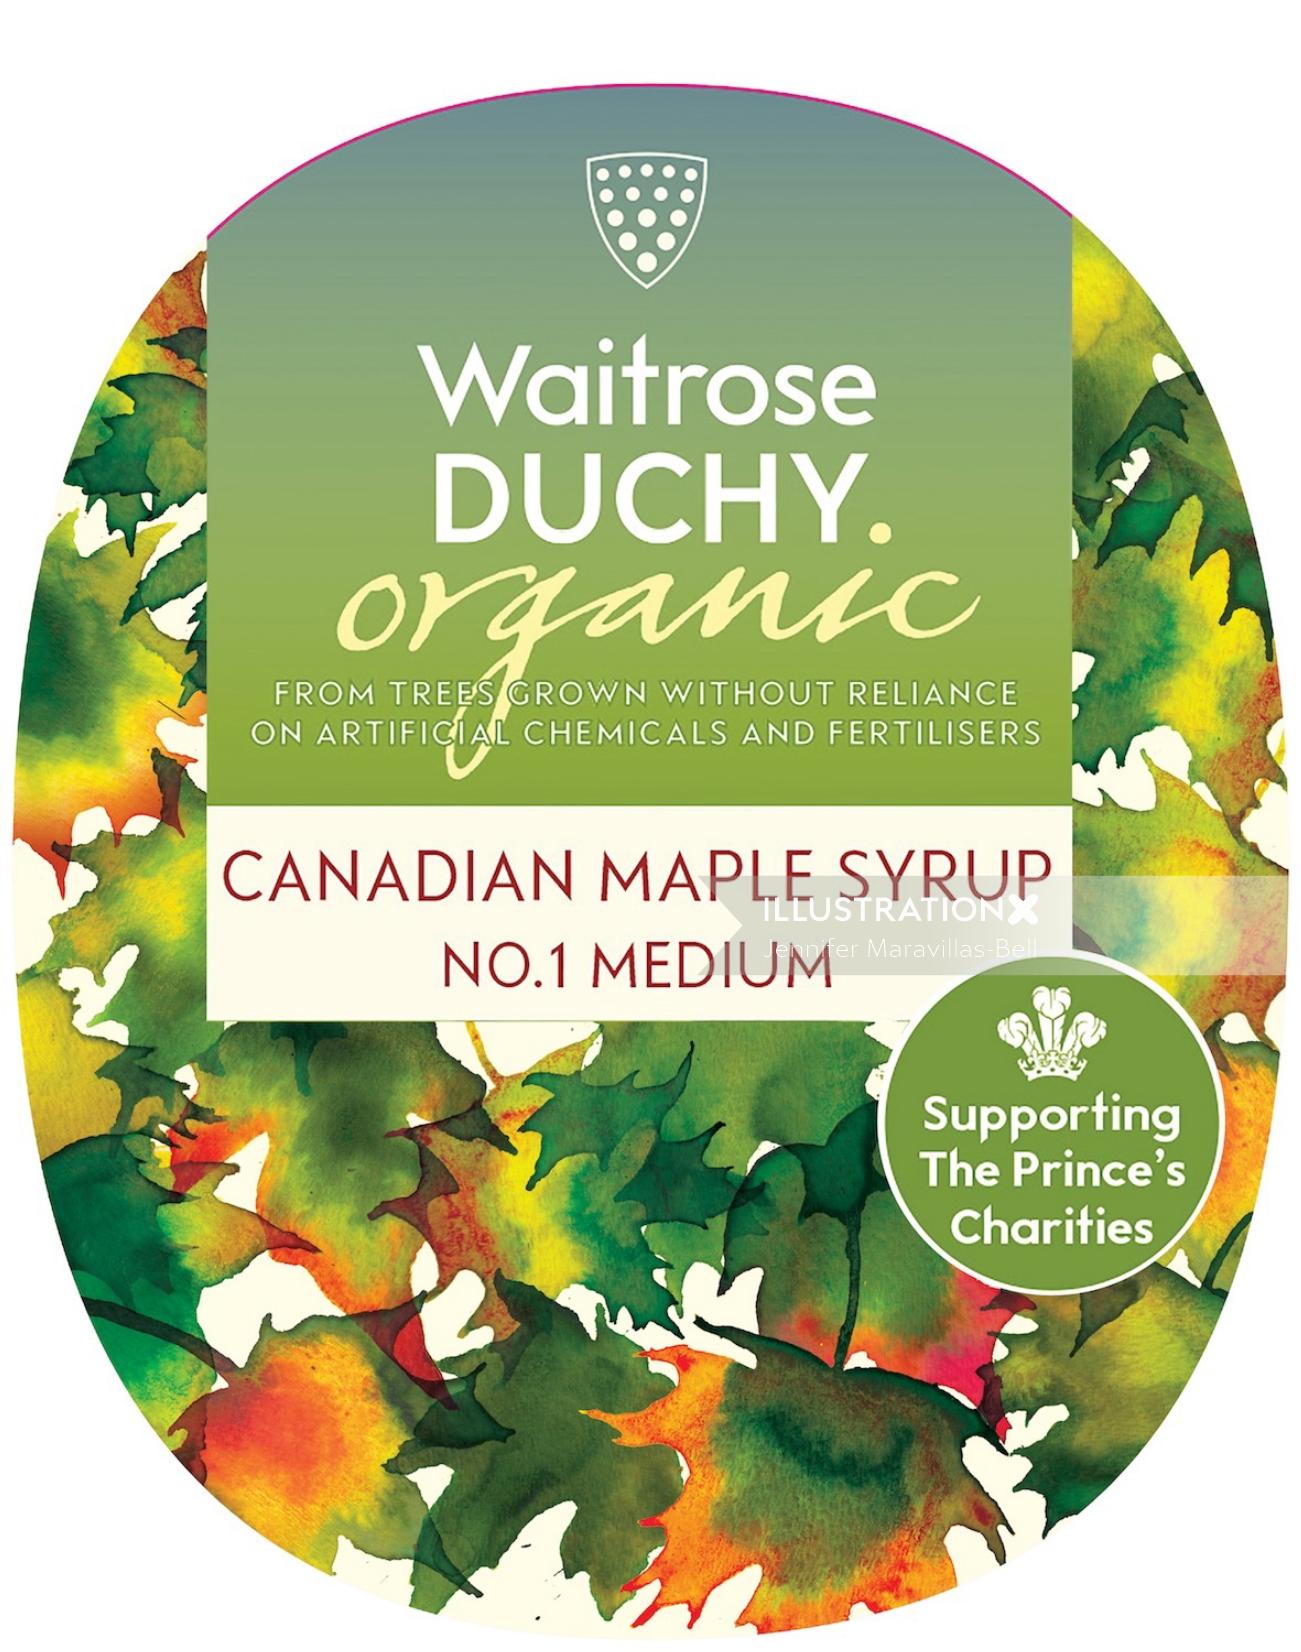 Waitrose Duchy Organic のラベル デザイン - カナディアン メープル シロップ